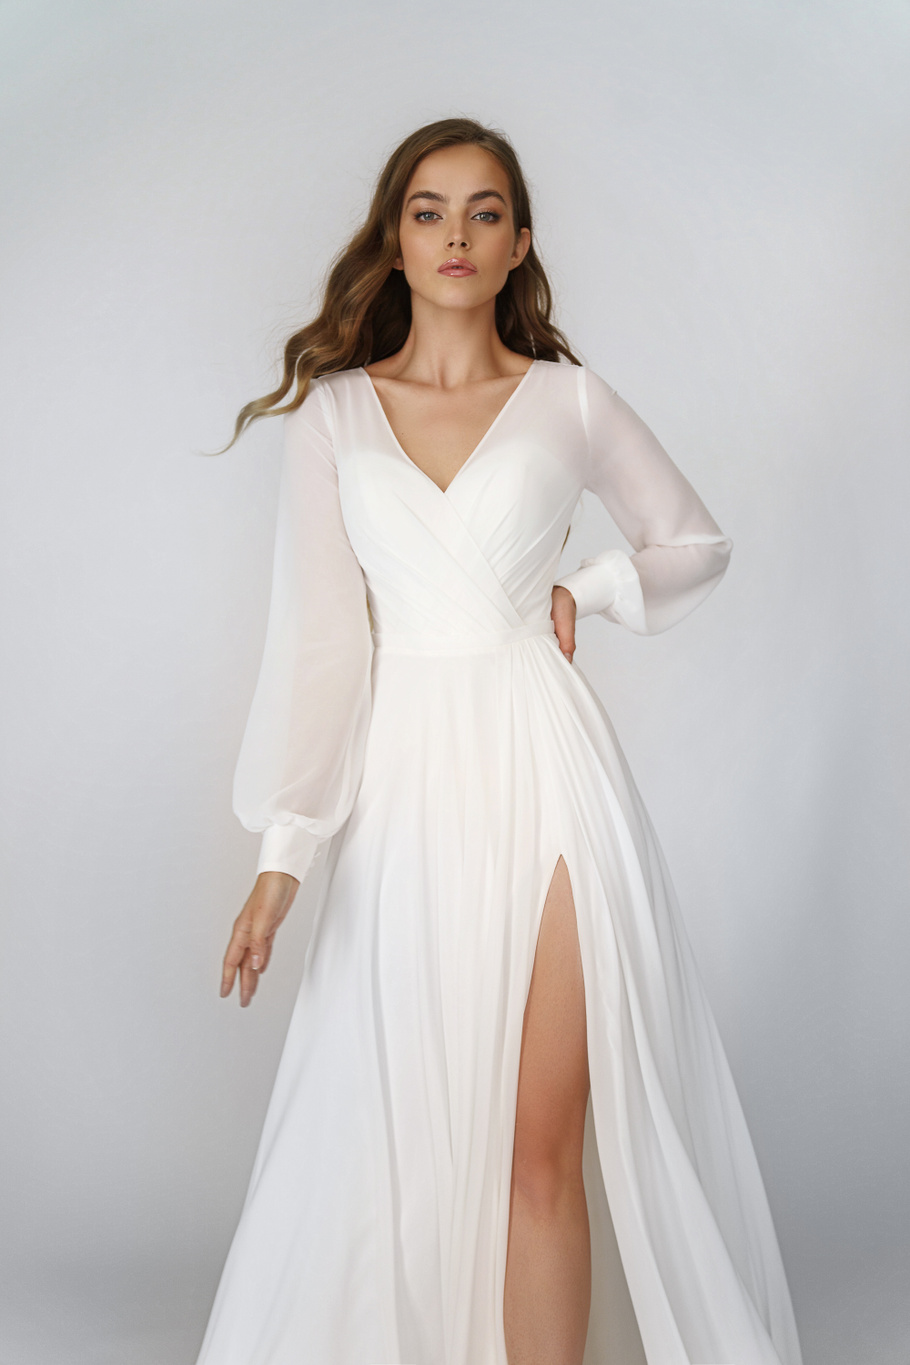 Свадебное платье «Осфадель» Марта — купить в Самаре платье Осфадель из коллекции 2021 года